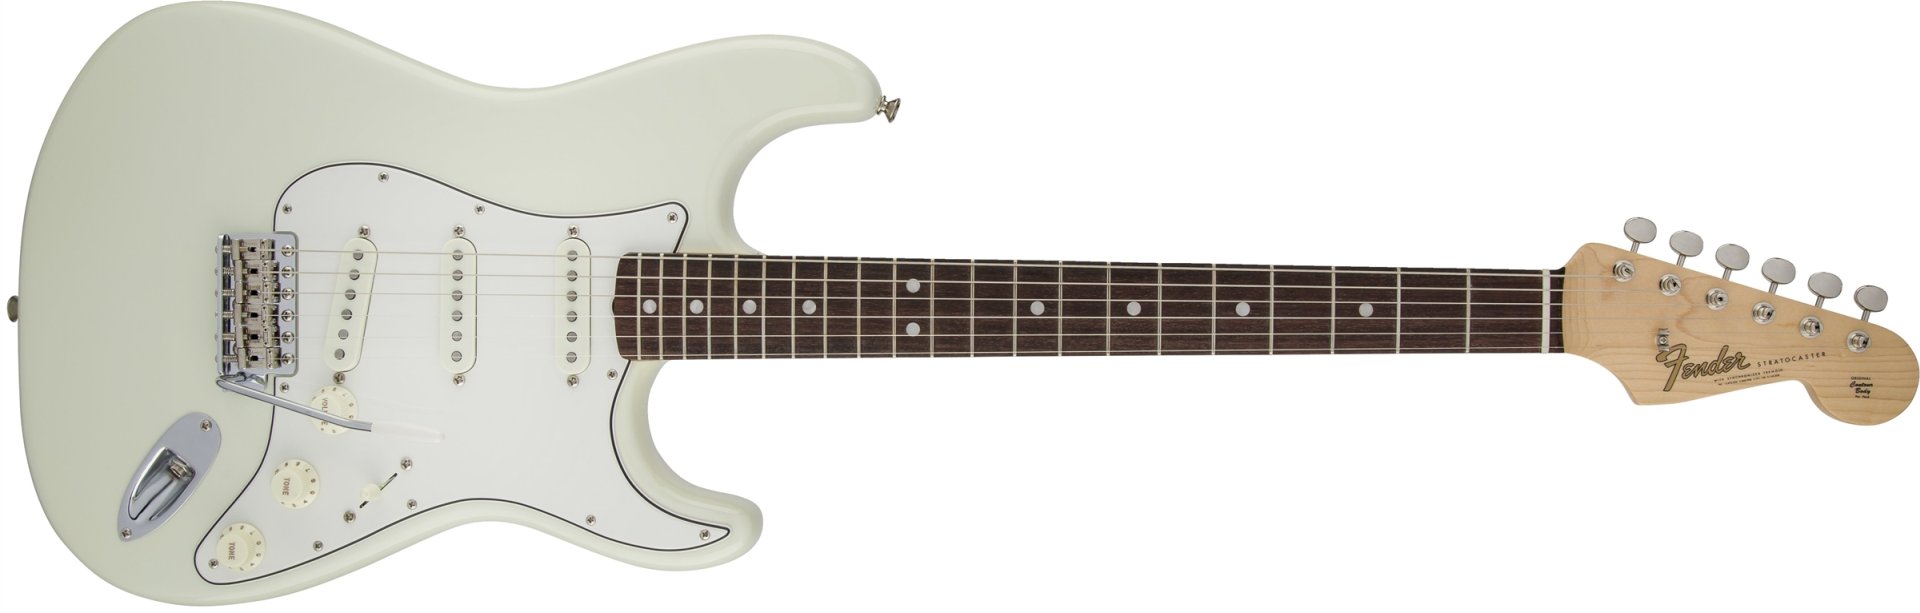 Fender American Vintage 65 Stratocaster